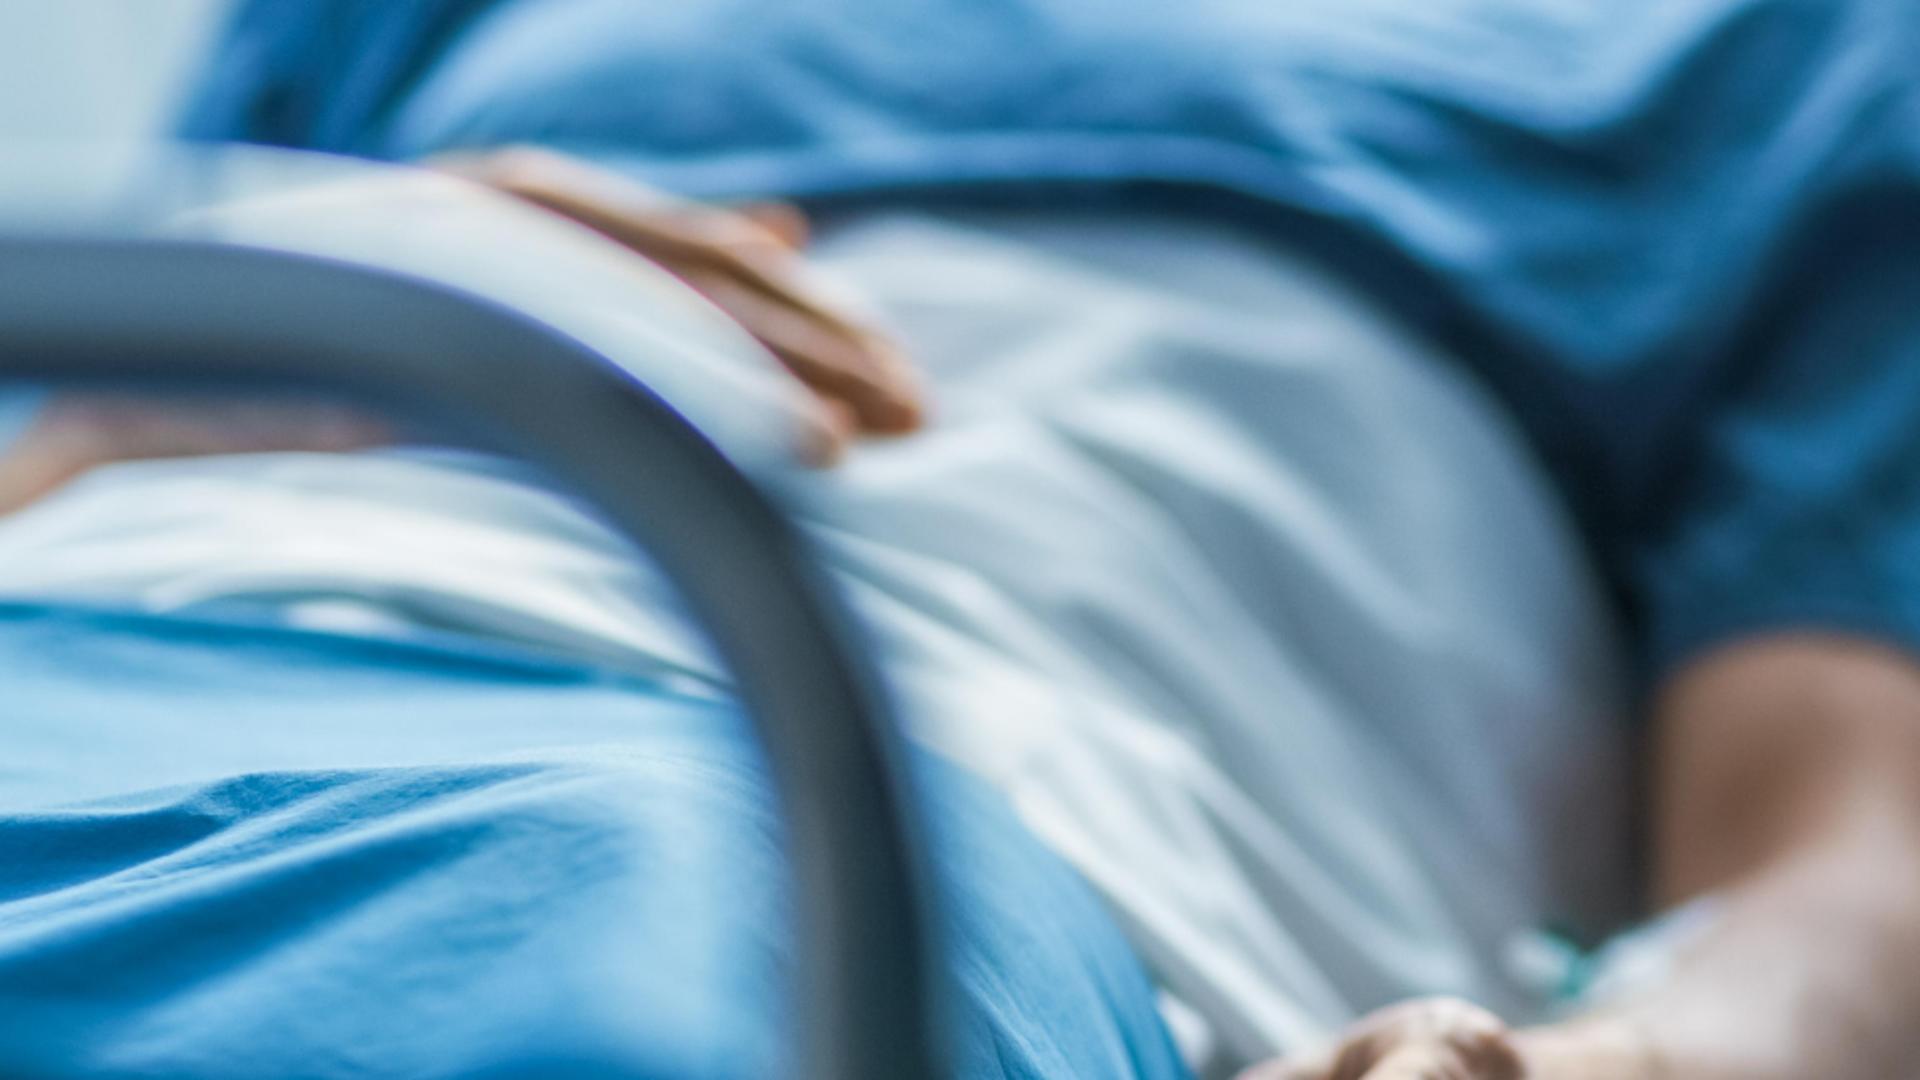 Operație RARĂ la Sibiu: Un bărbat înjunghiat în inimă, salvat ca prin minune - Cord cusut chiar în timp ce bătea